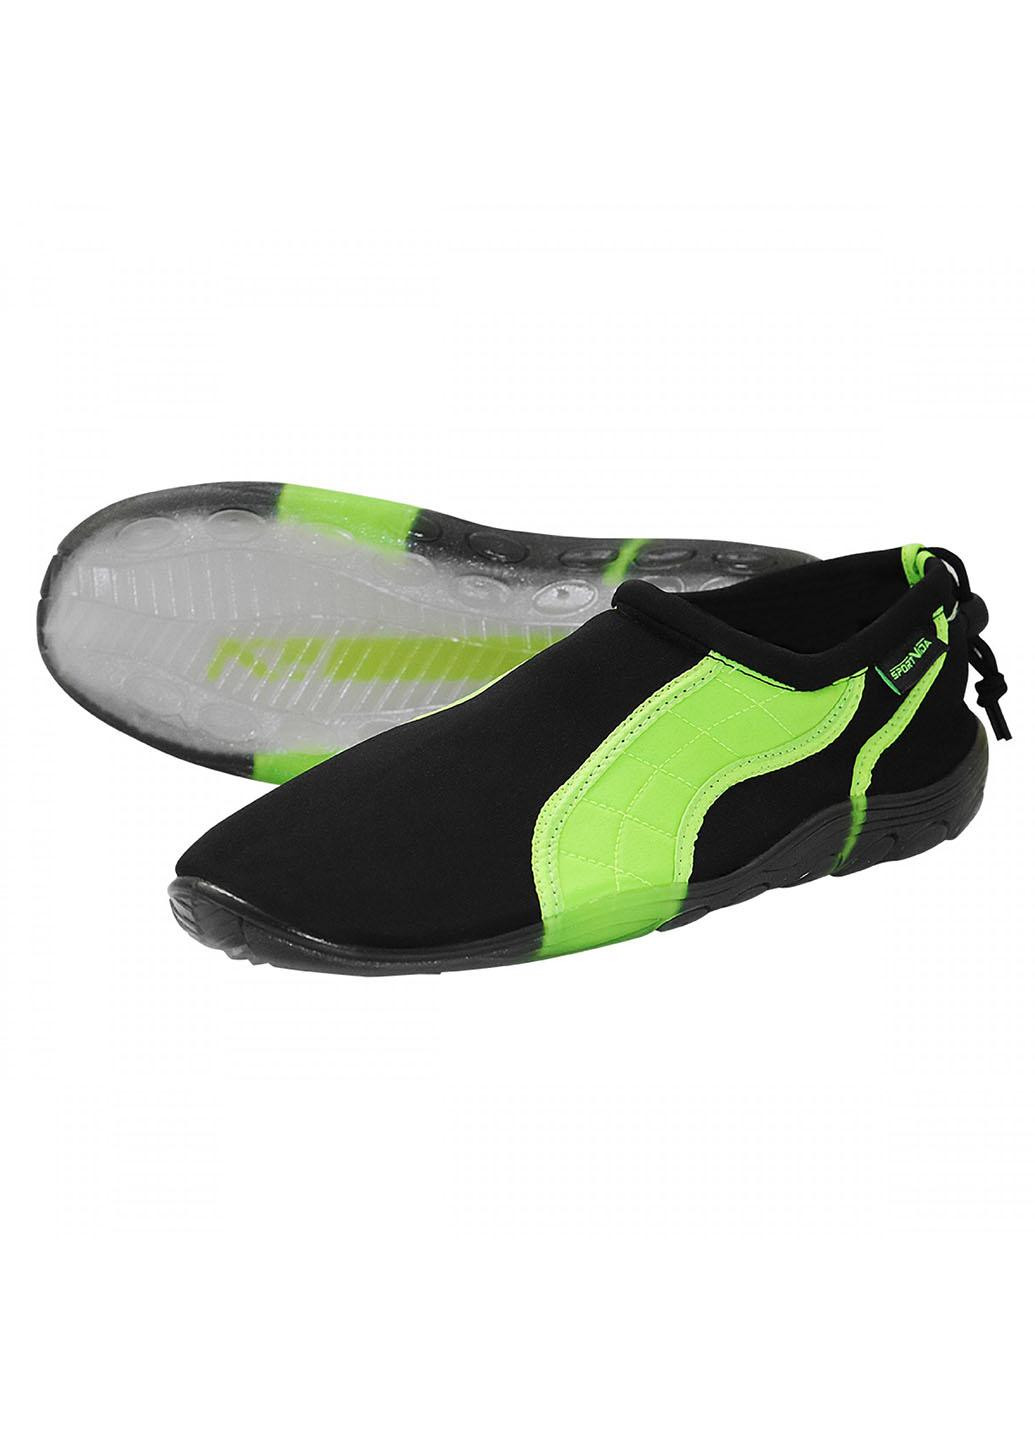 Взуття для пляжу і коралів (аквашузи) SV-GY0004-R43 Size 43 Black/Green SportVida (258486771)